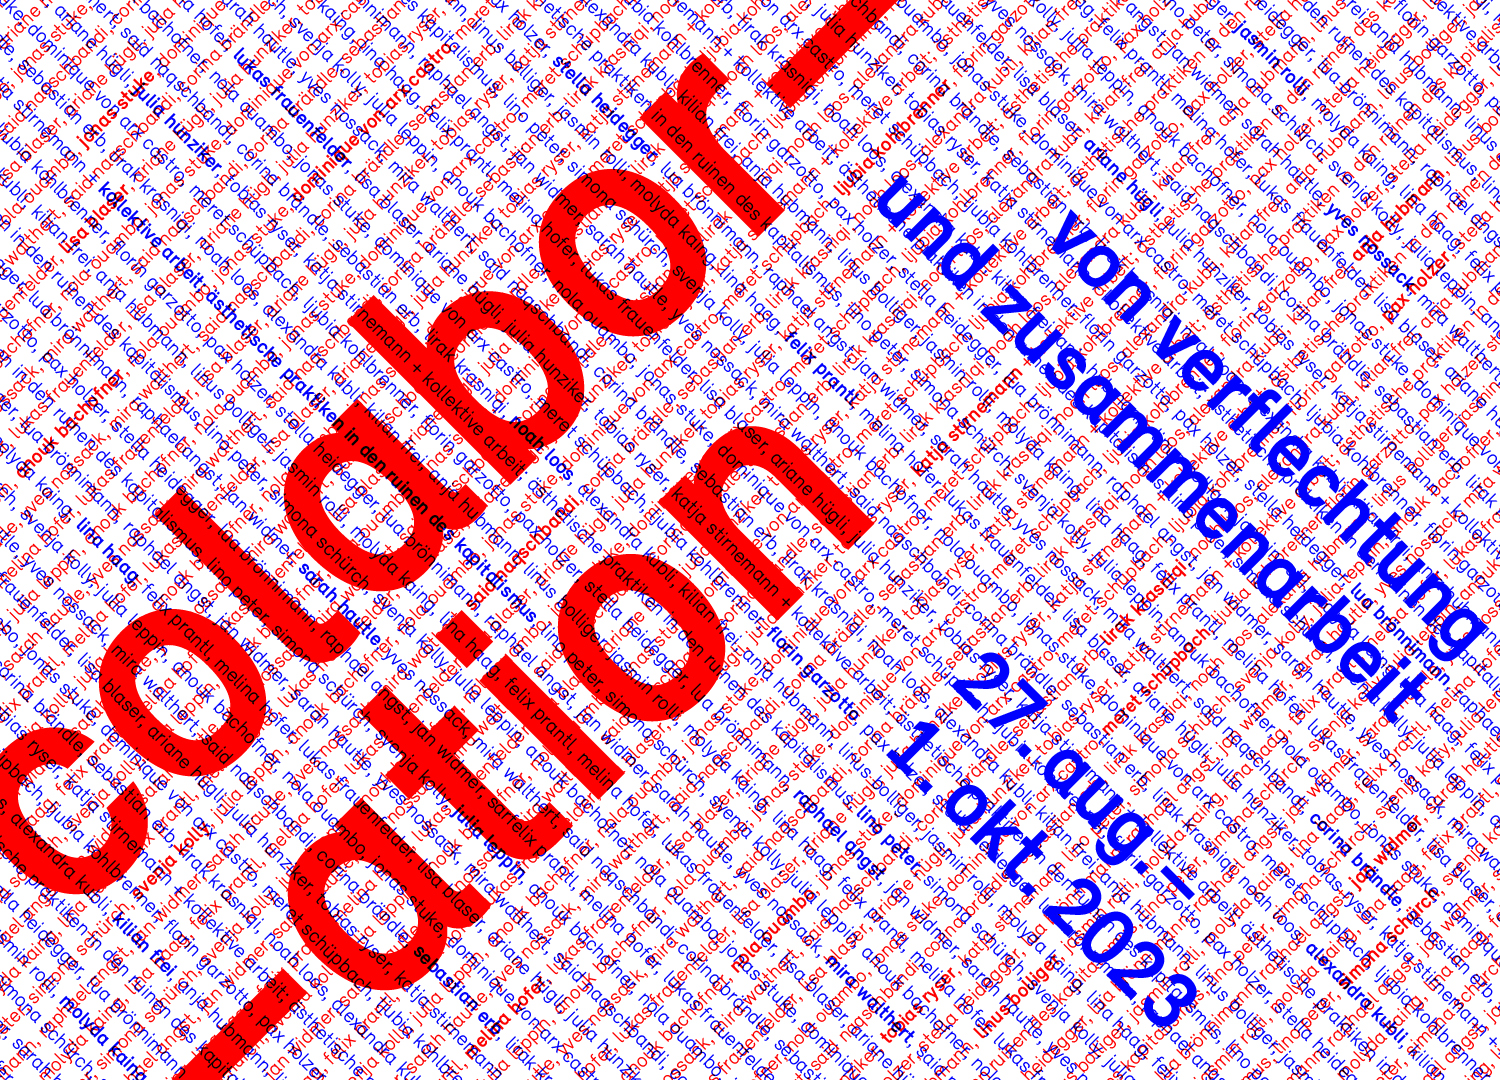 Colabor–ation: Von Verflechtung und Zusammenarbeit